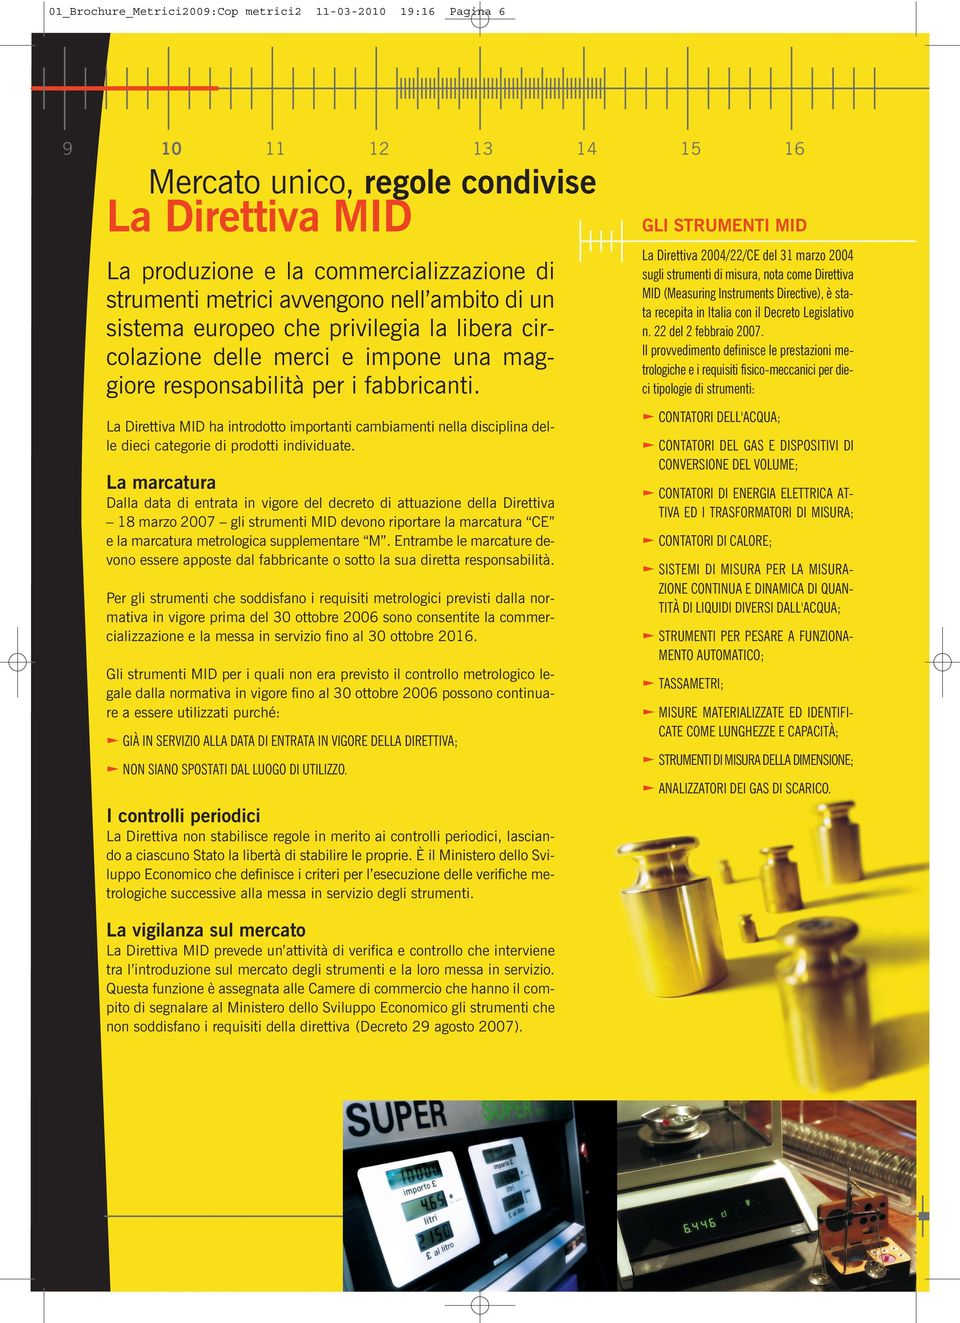 La Direttiva 2004/22/CE del 31 marzo 2004 sugli strumenti di misura, nota come Direttiva MID (Measuring Instruments Directive), è stata recepita in Italia con il Decreto Legislativo n.